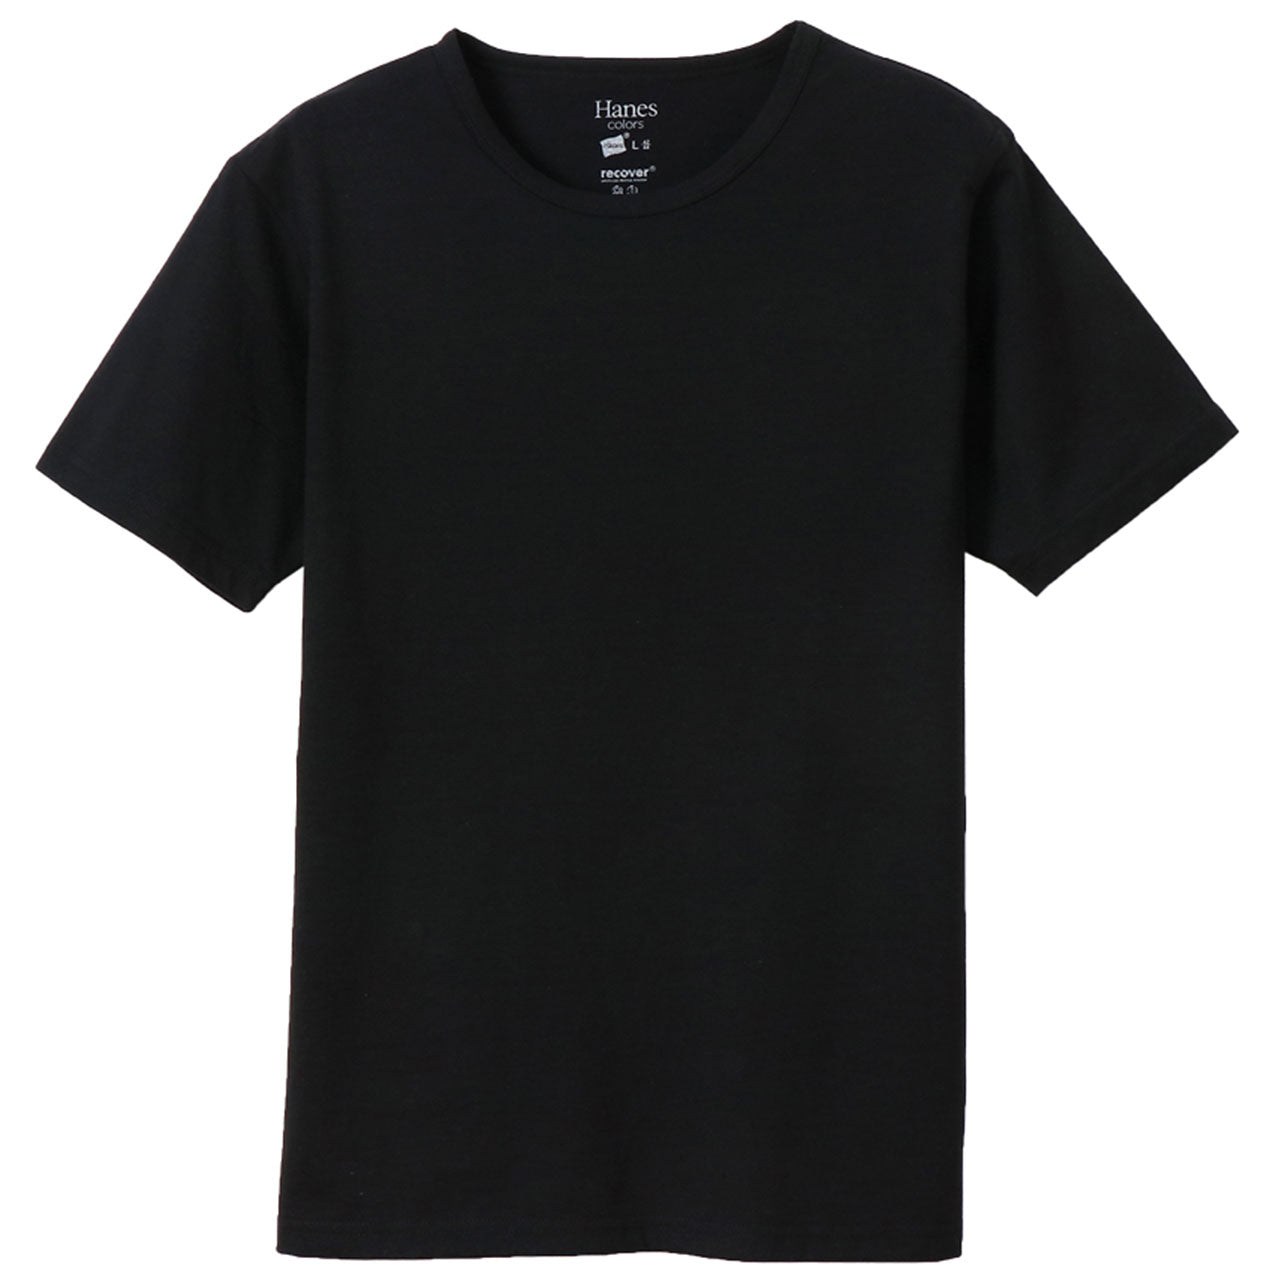 ヘインズ Tシャツ 半袖 メンズ レディース M・L (トップス ユニセックス シャツ クルーネック インナー 黒 hanes) (在庫限り)